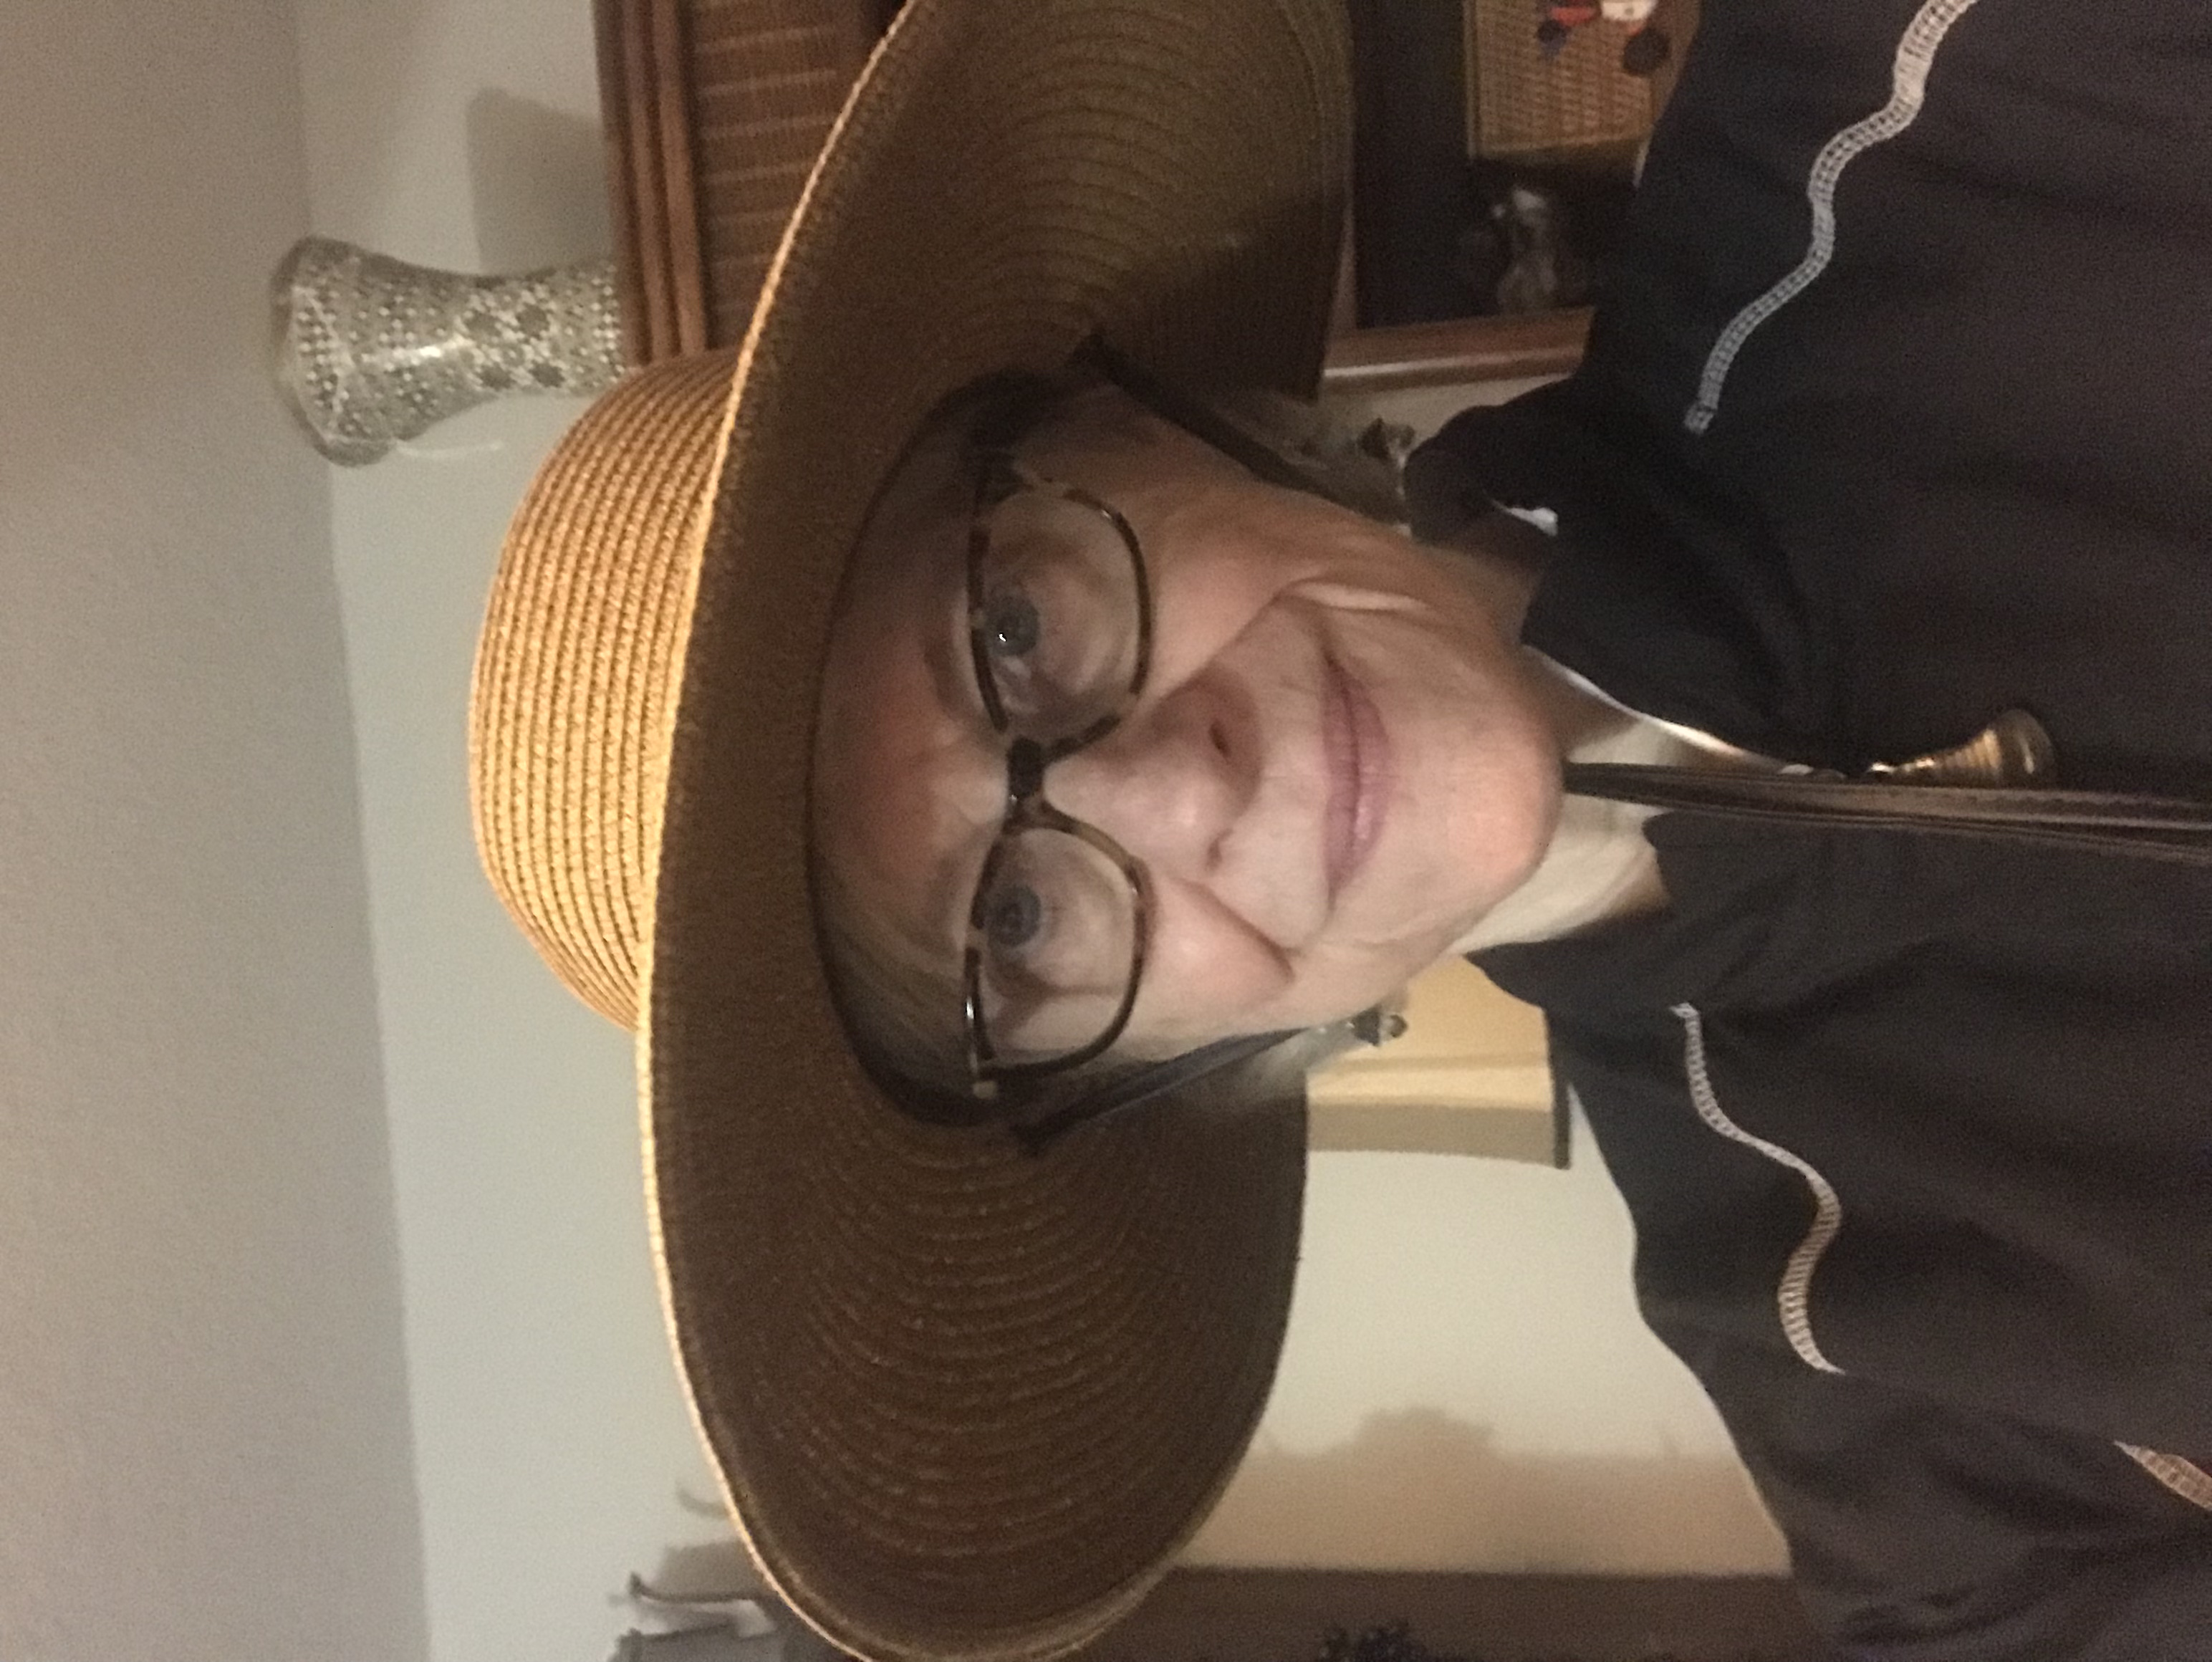 nan wearing a hat